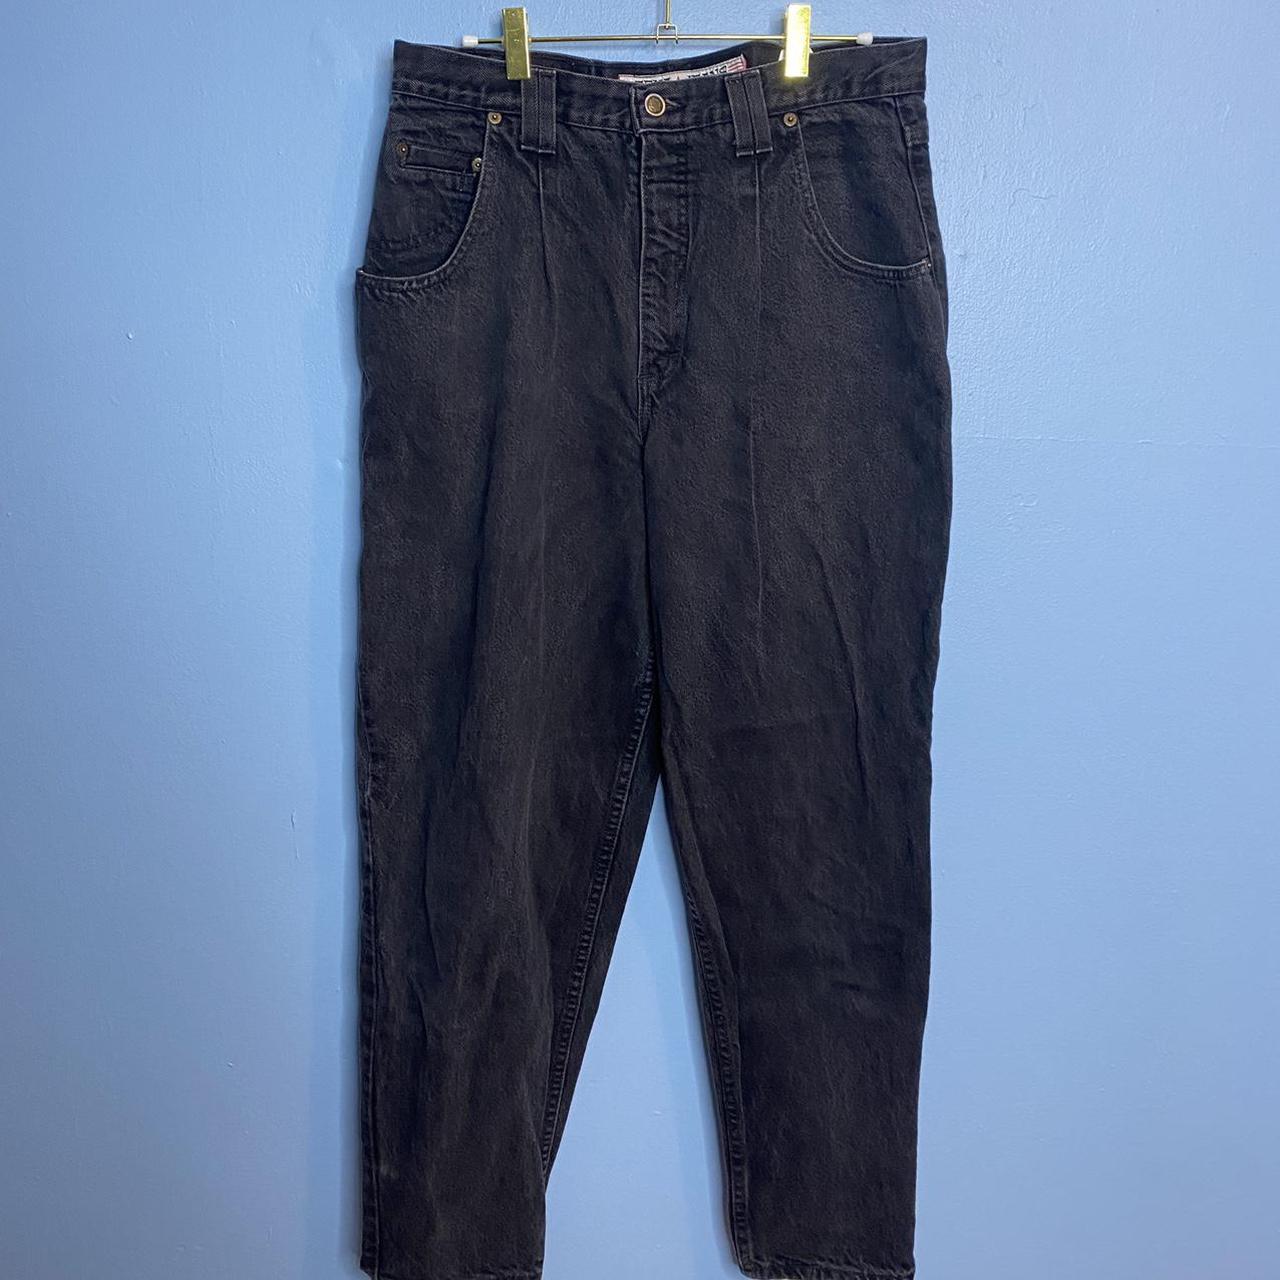 Zena Jeans Women's Black Jeans (3)